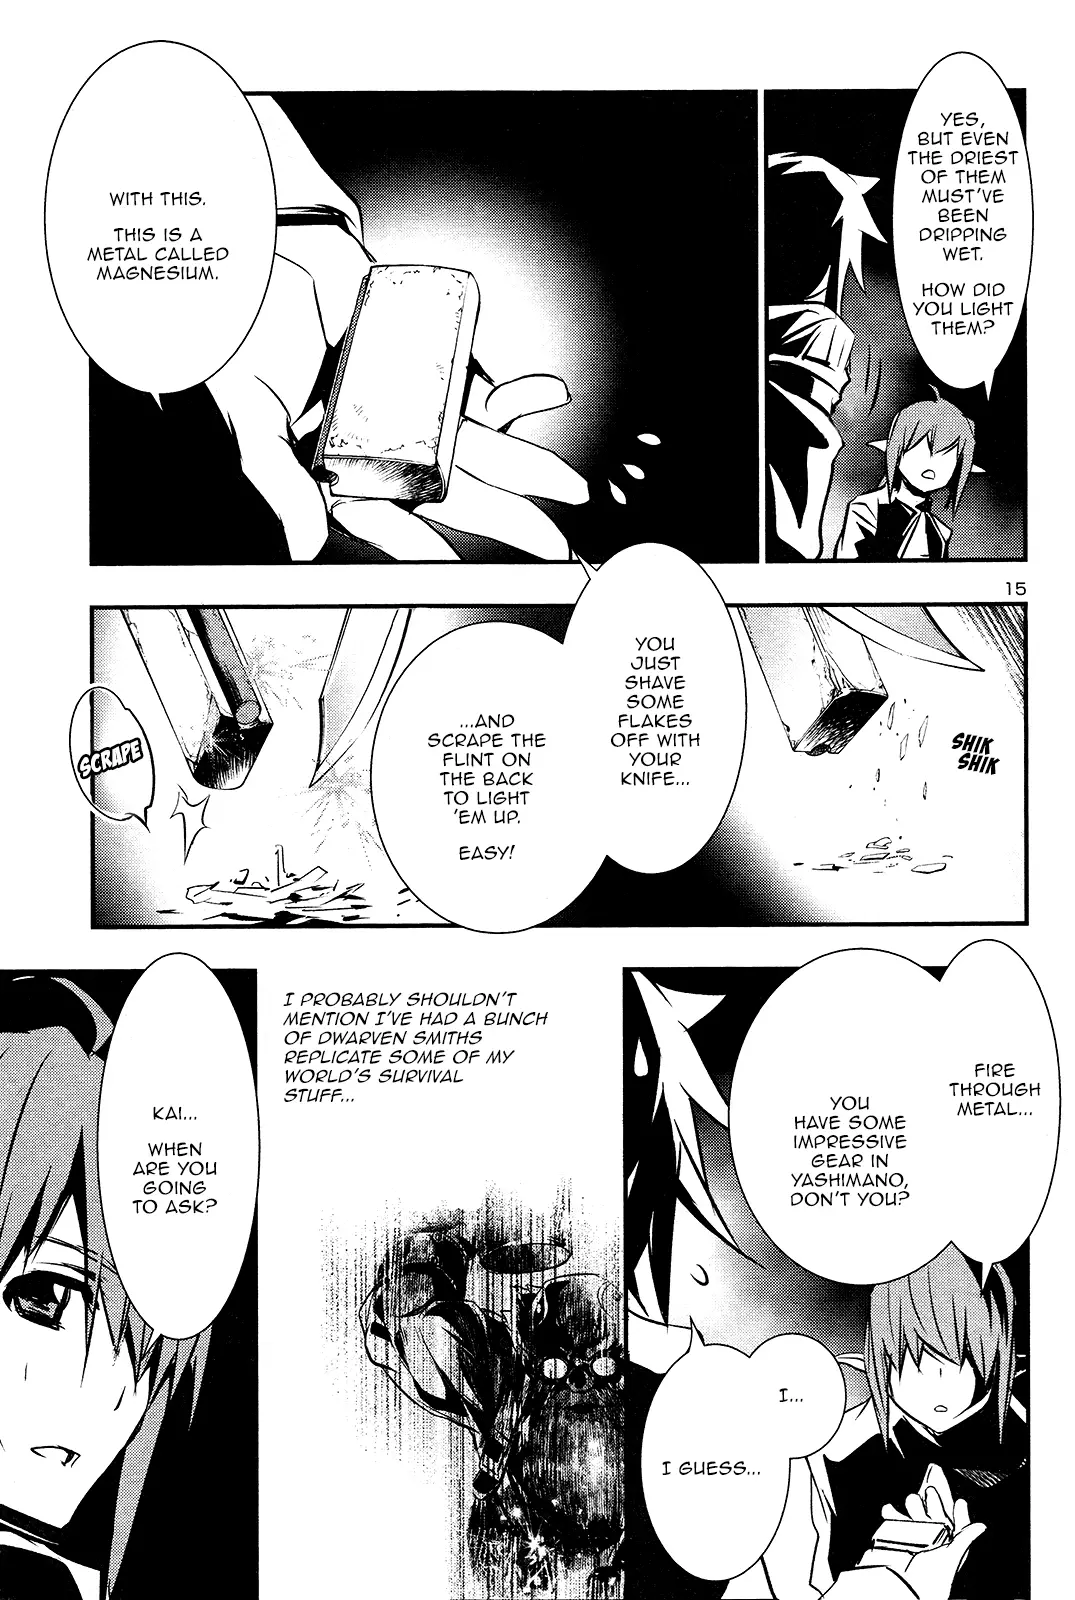 Shinju no Nectar - 35 page 15